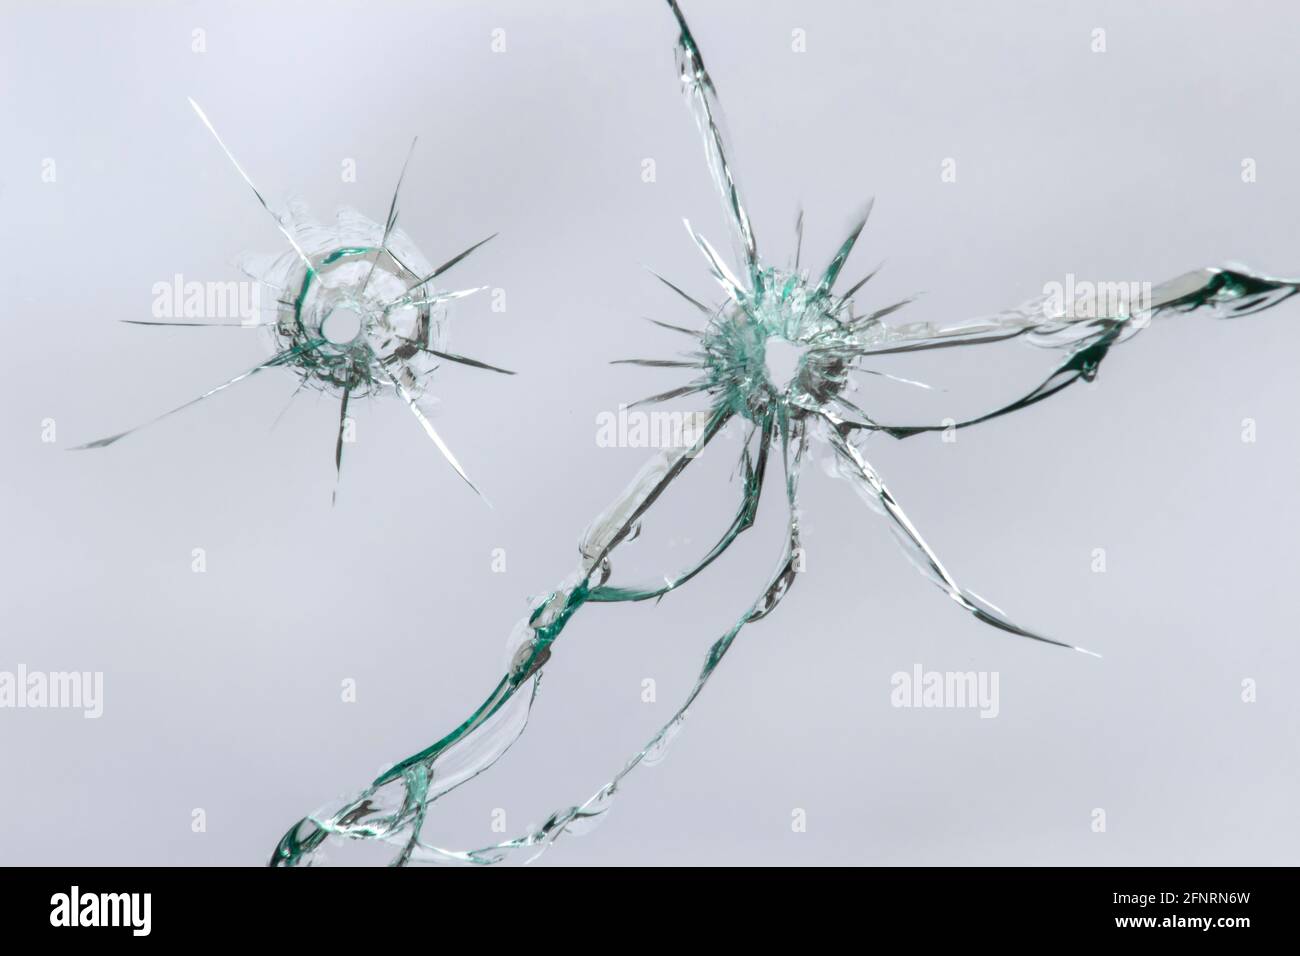 Trous de balle dans le verre, verre fissuré, effet de rupture, texture pour le design Banque D'Images